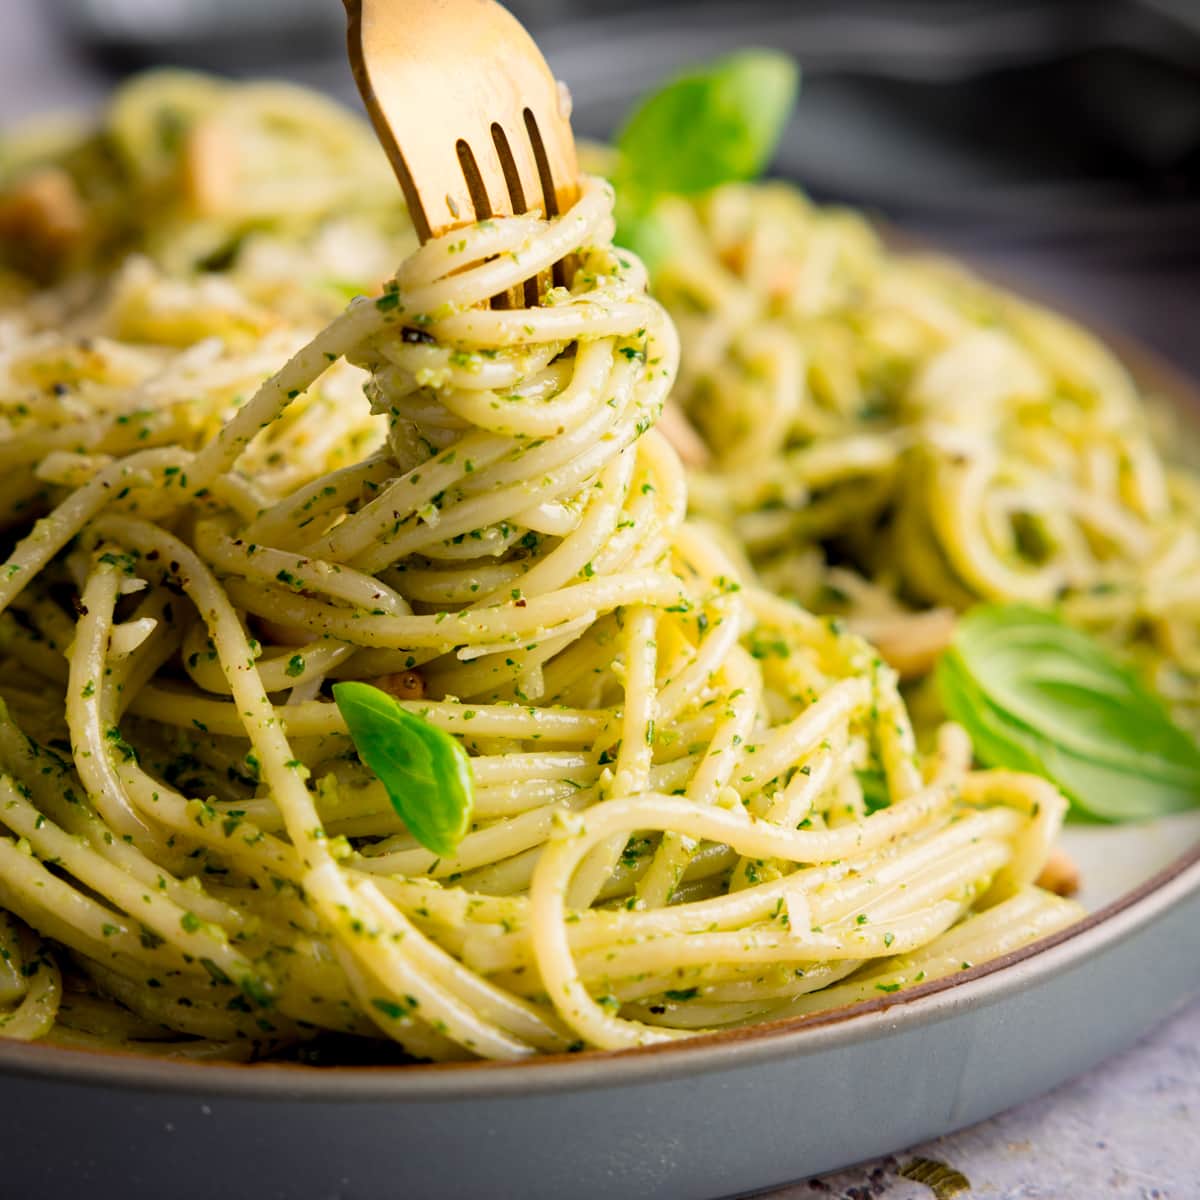 Pesto classique - 5 ingredients 15 minutes